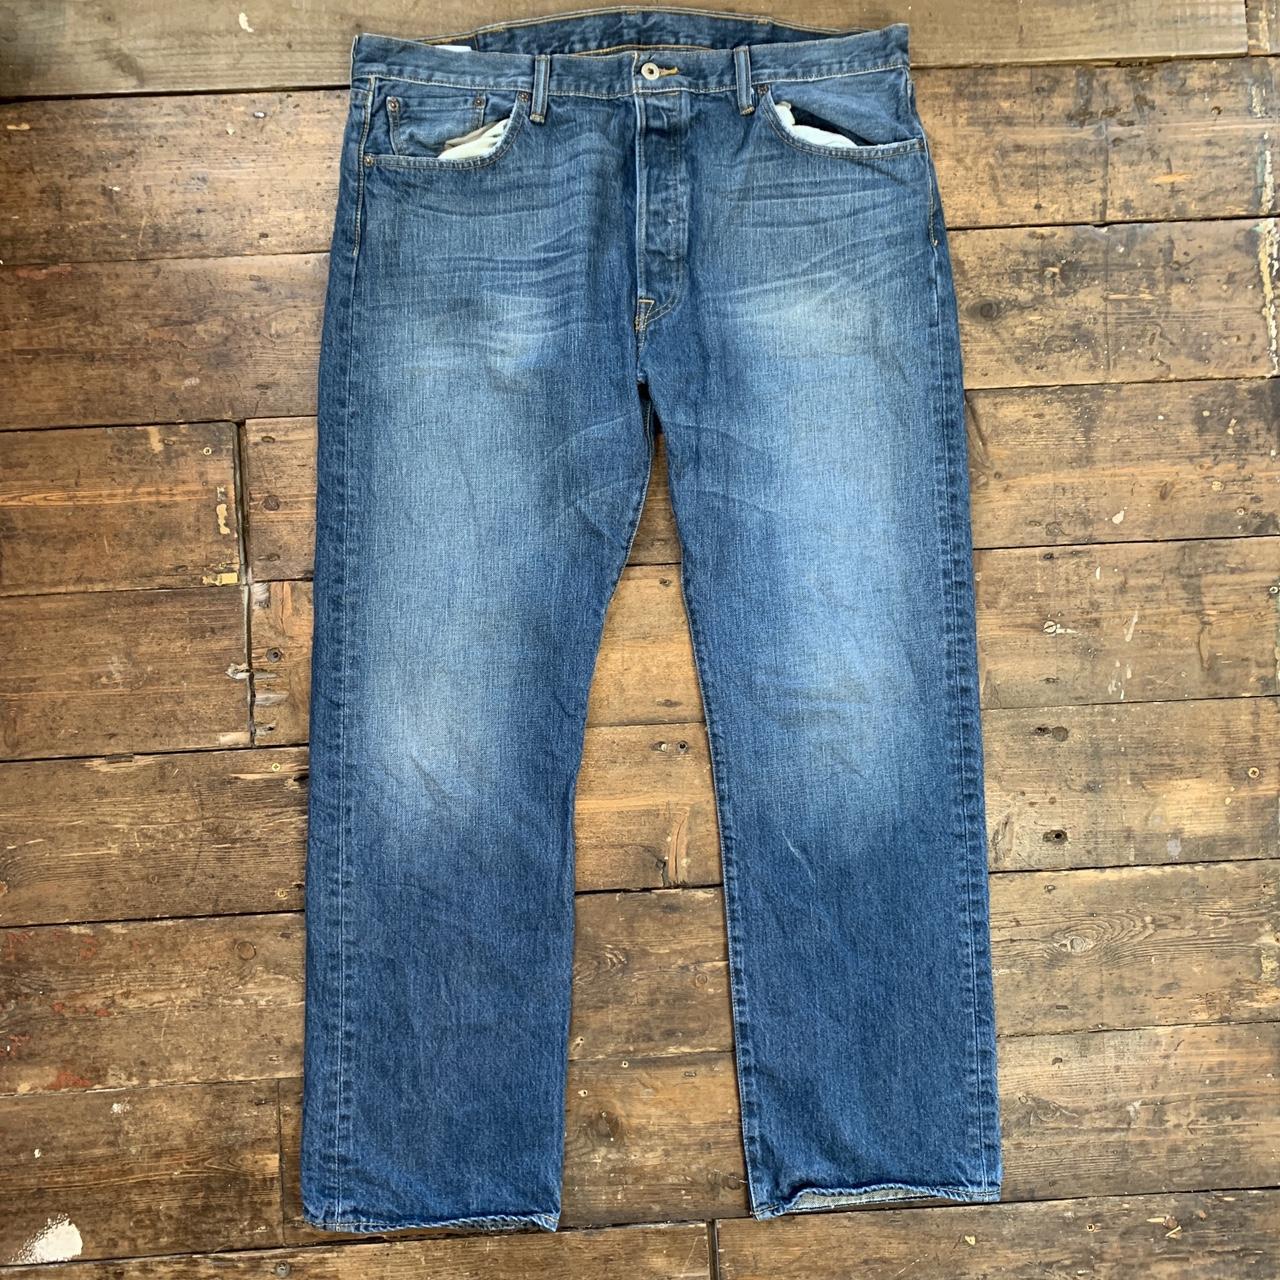 Vintage Levi’s 501 Baggy Jeans SIZE: W40 x... - Depop